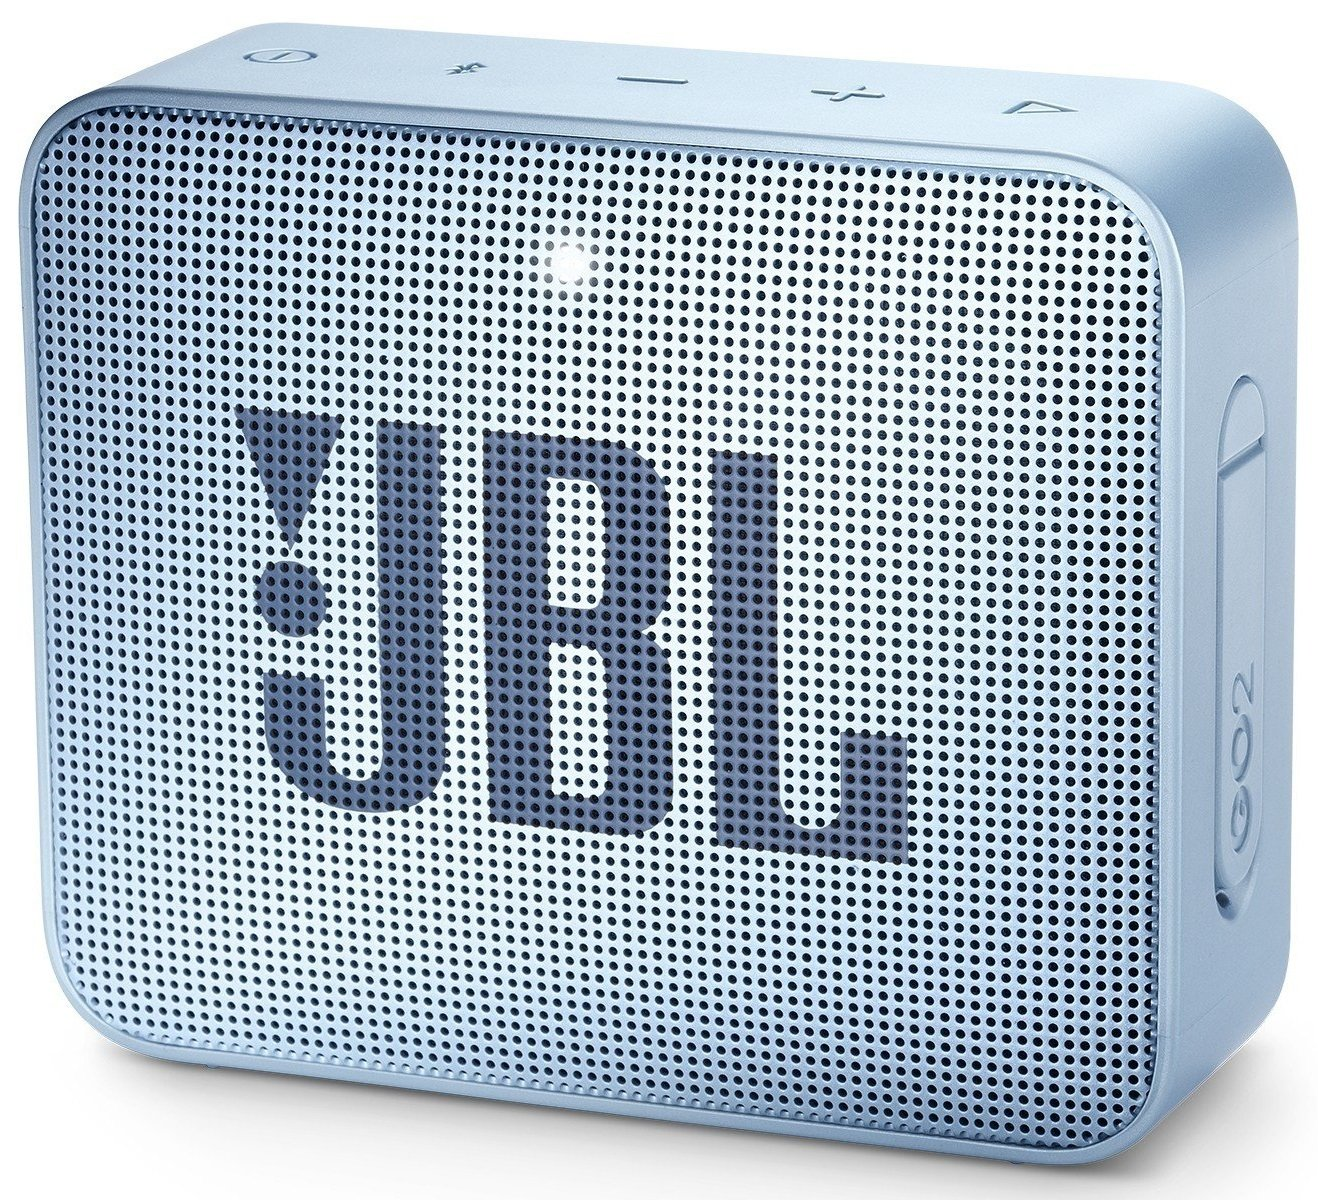 Приятный дизайн портативной акустики JBL GO 2 Ice Blue